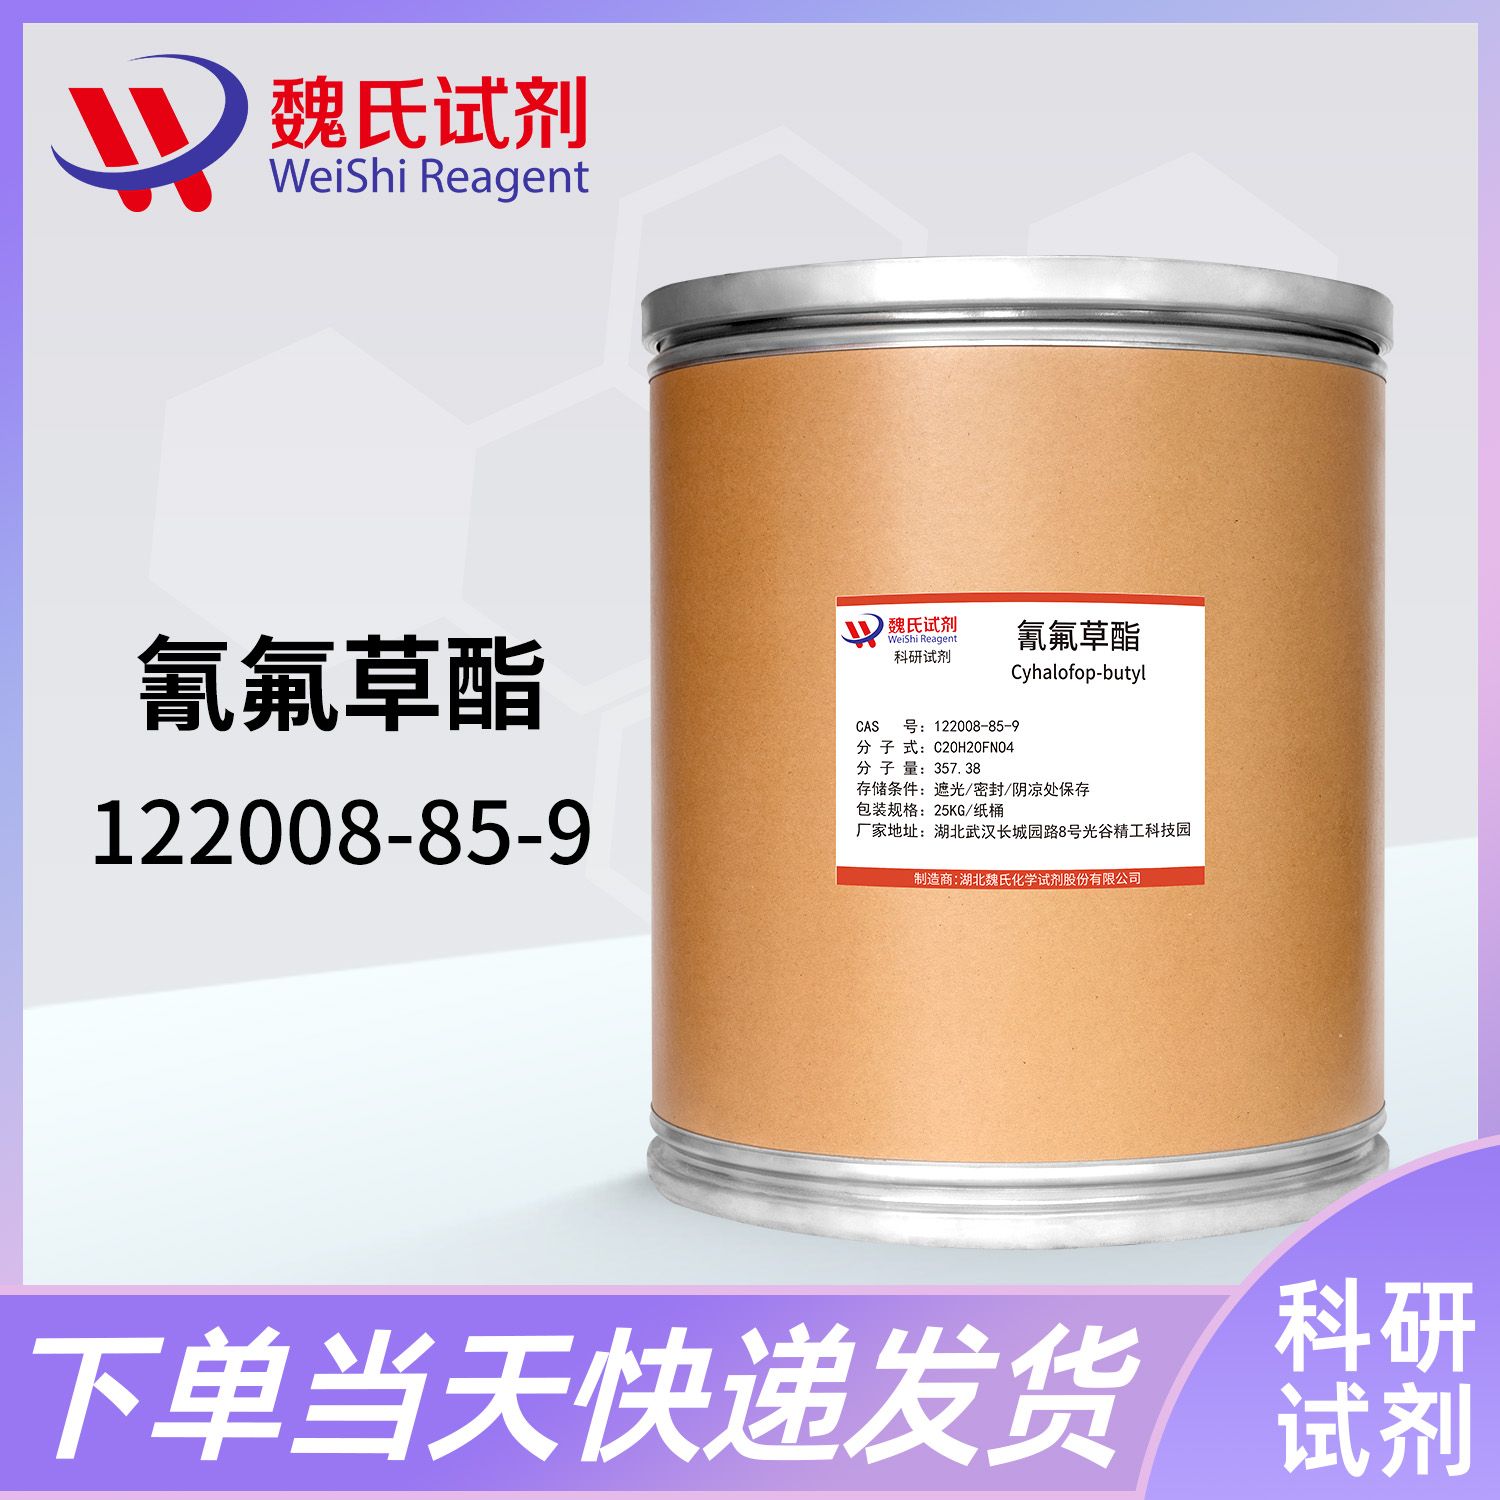 氰氟草酯—122008-85-9—Cyhalofop-butyl 